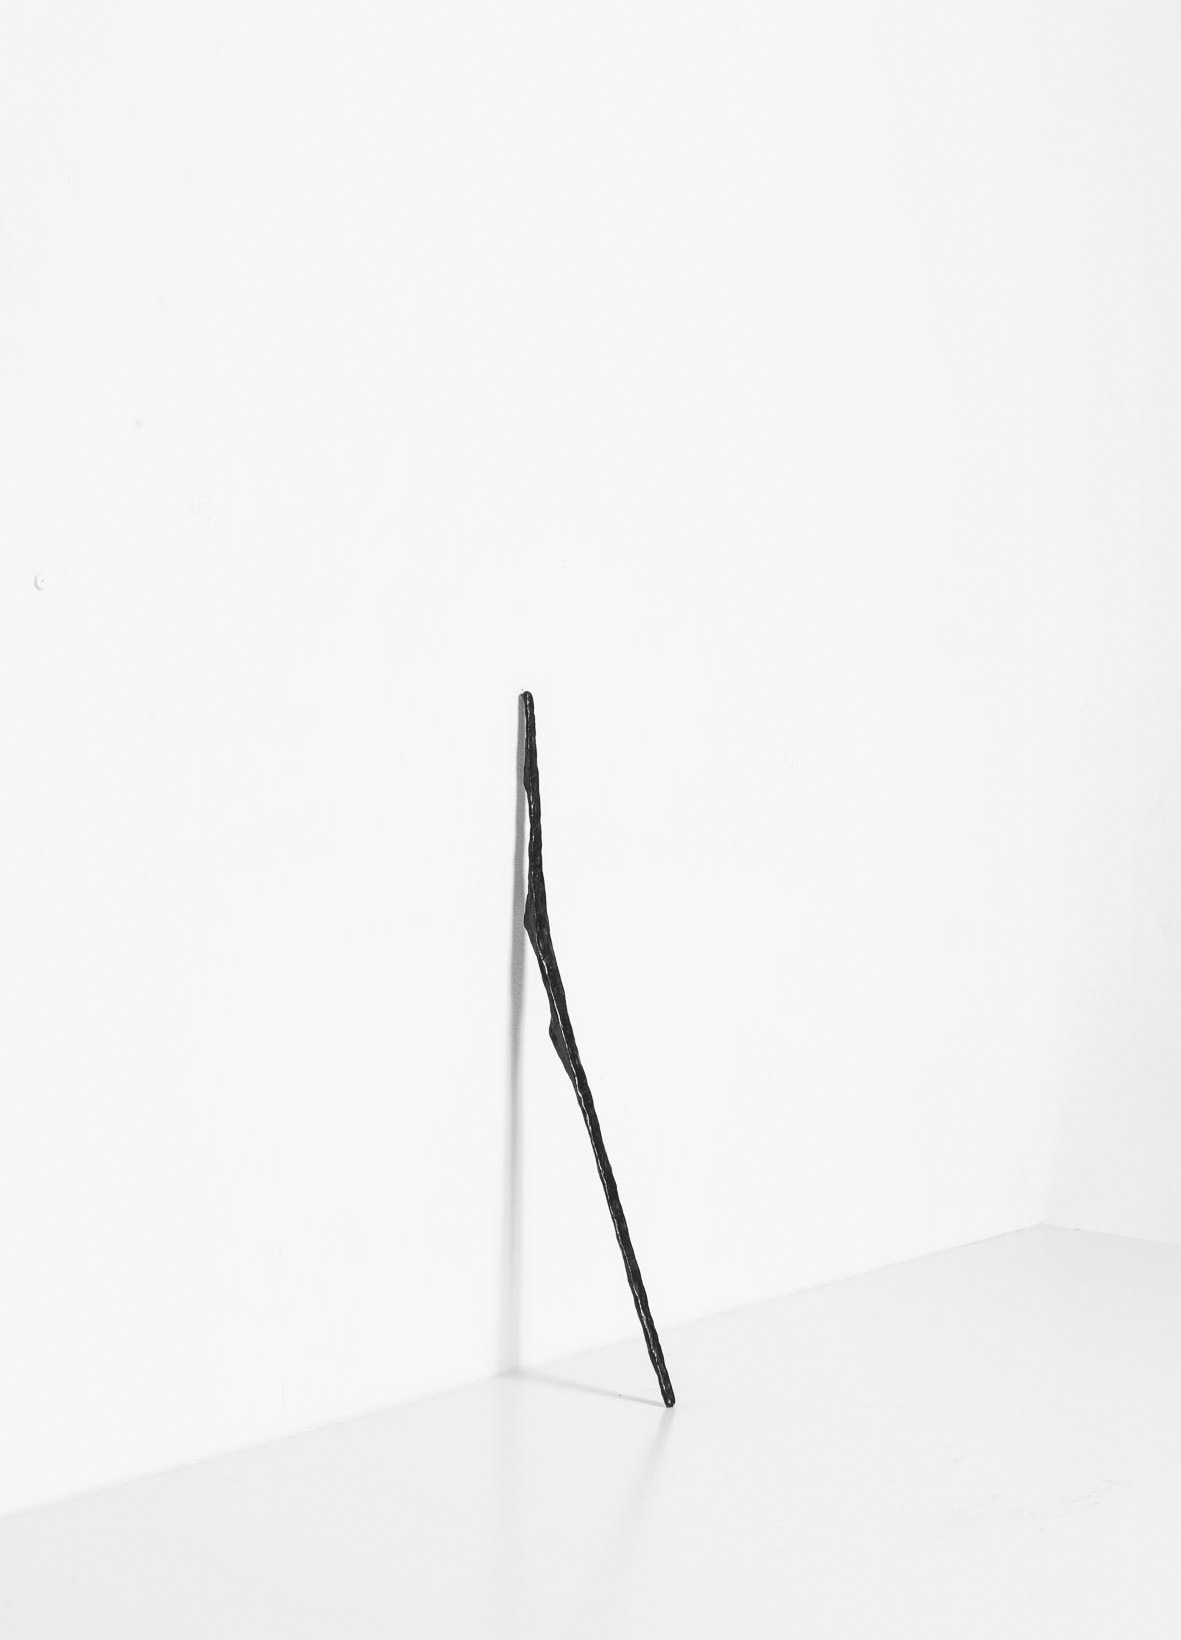 Sculpture I, 1991